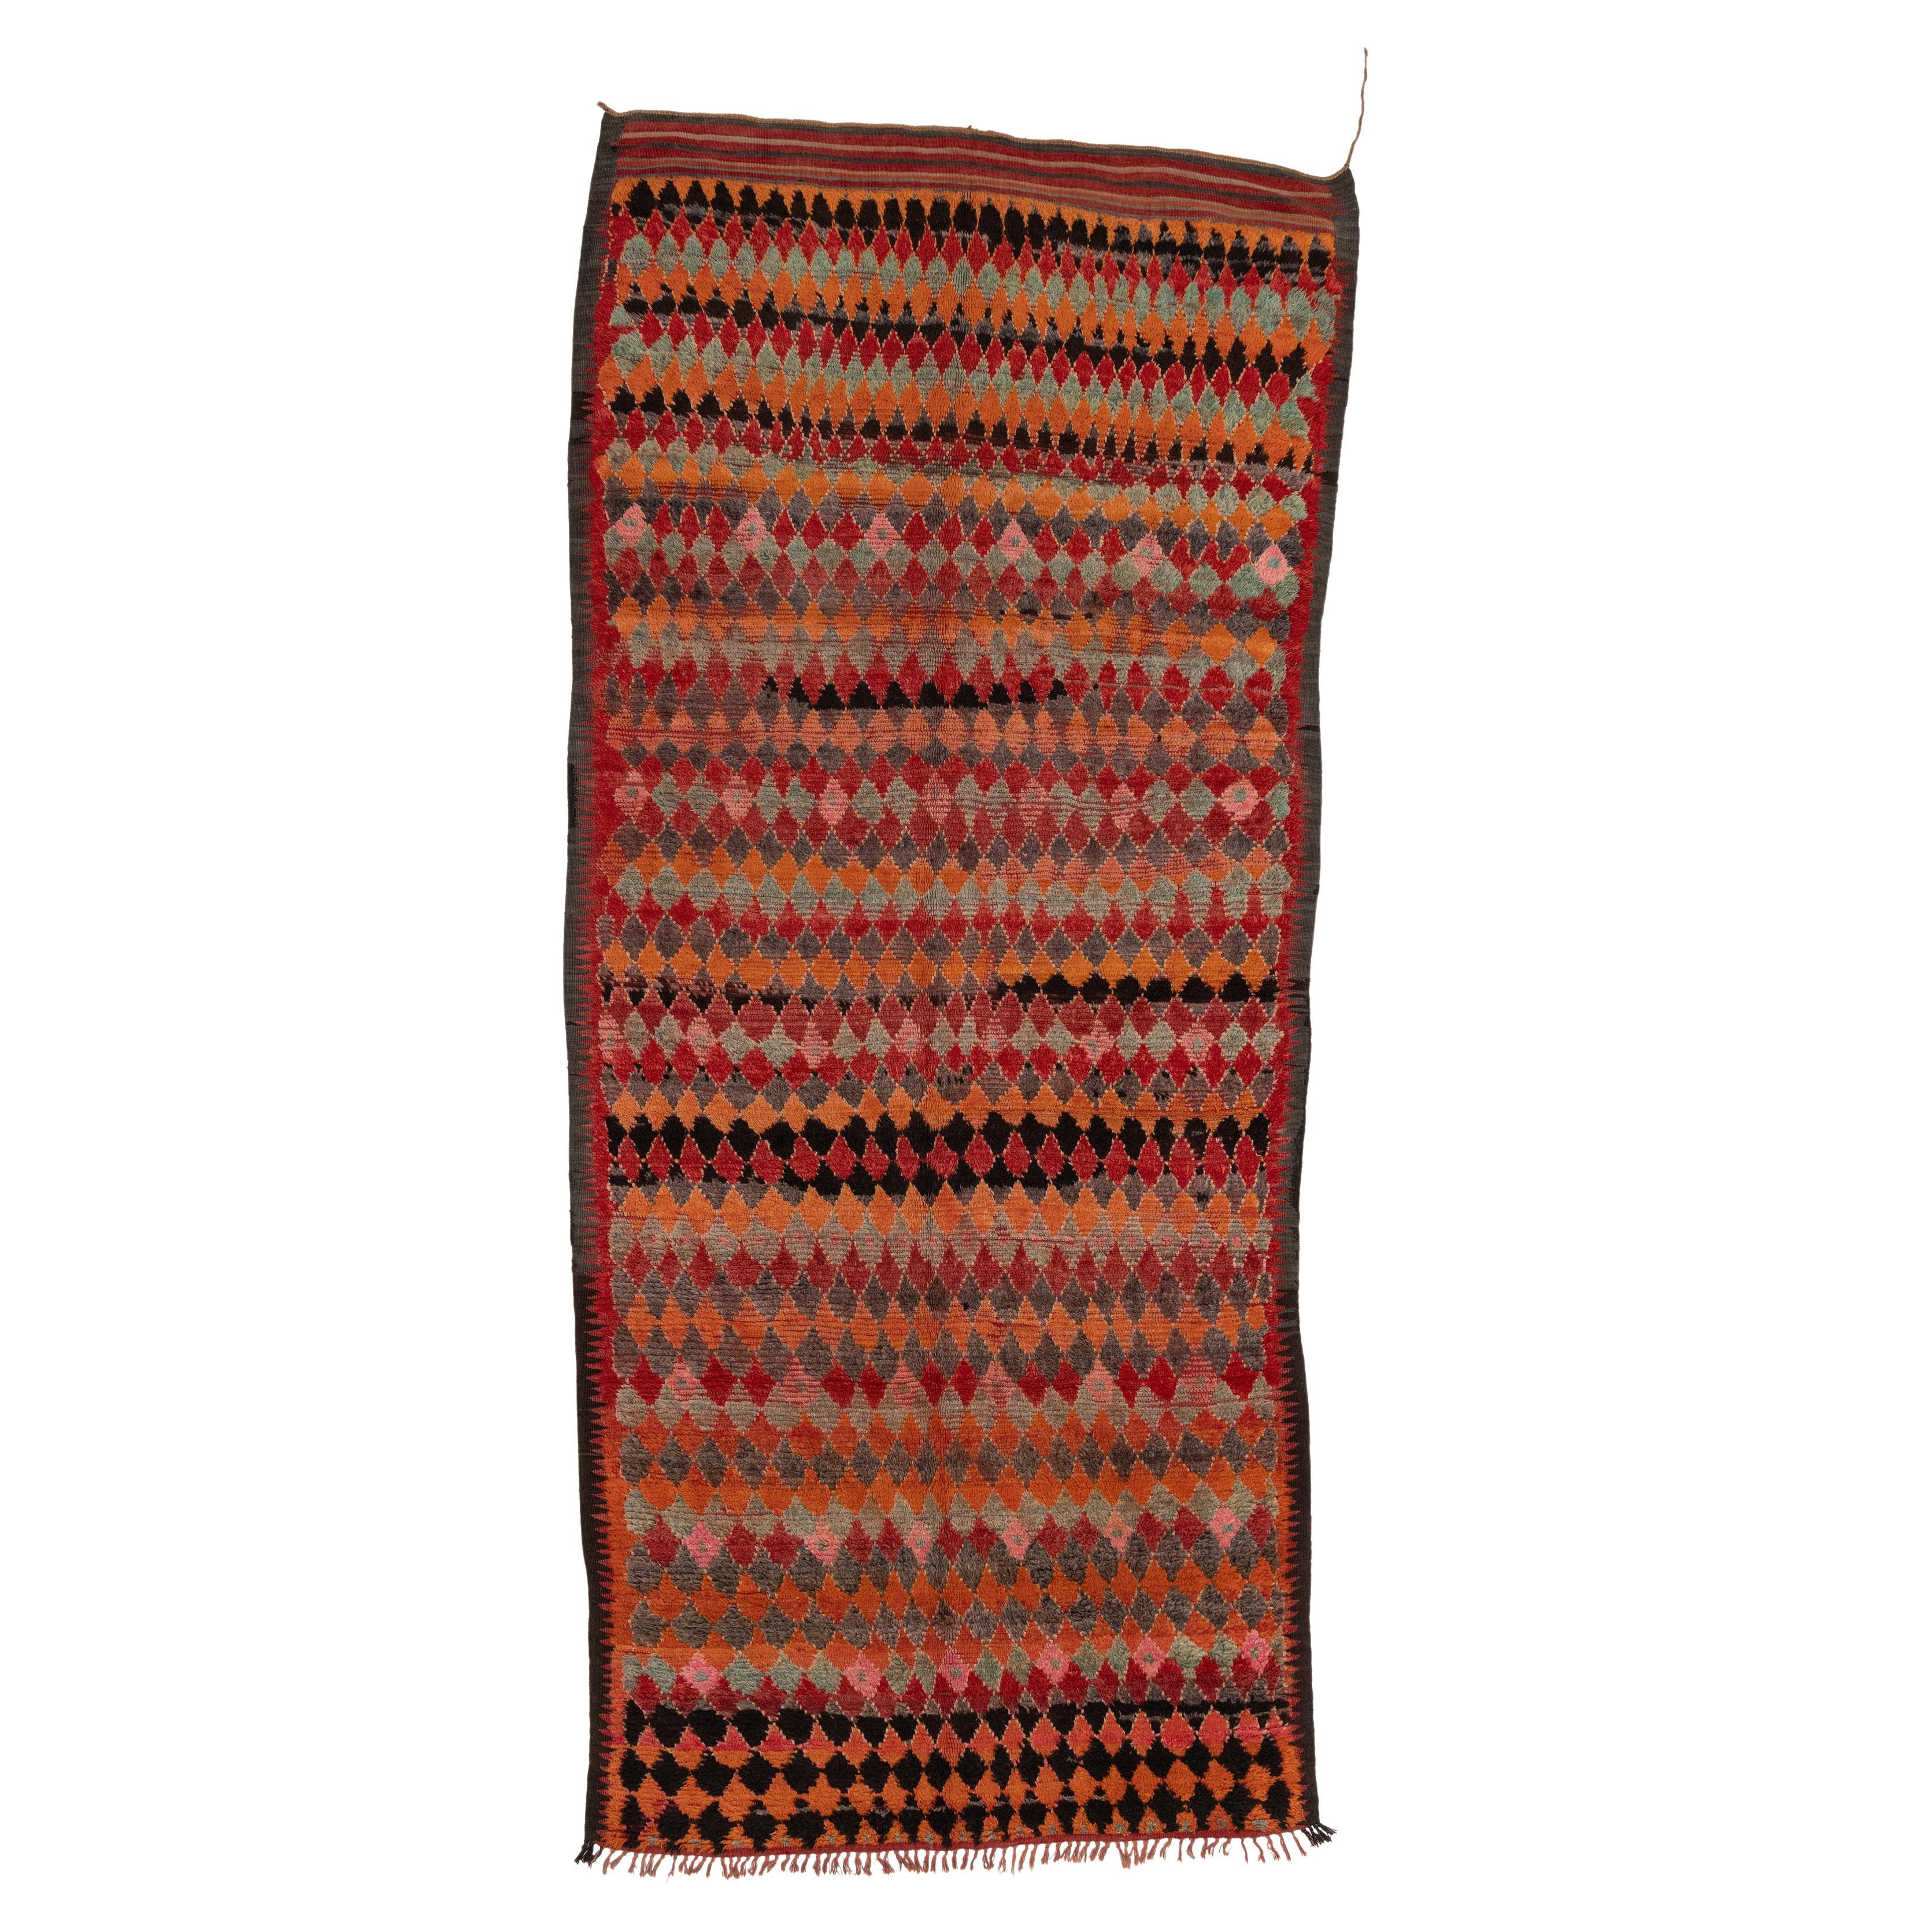 Vibrant Vintage Moroccan Rug